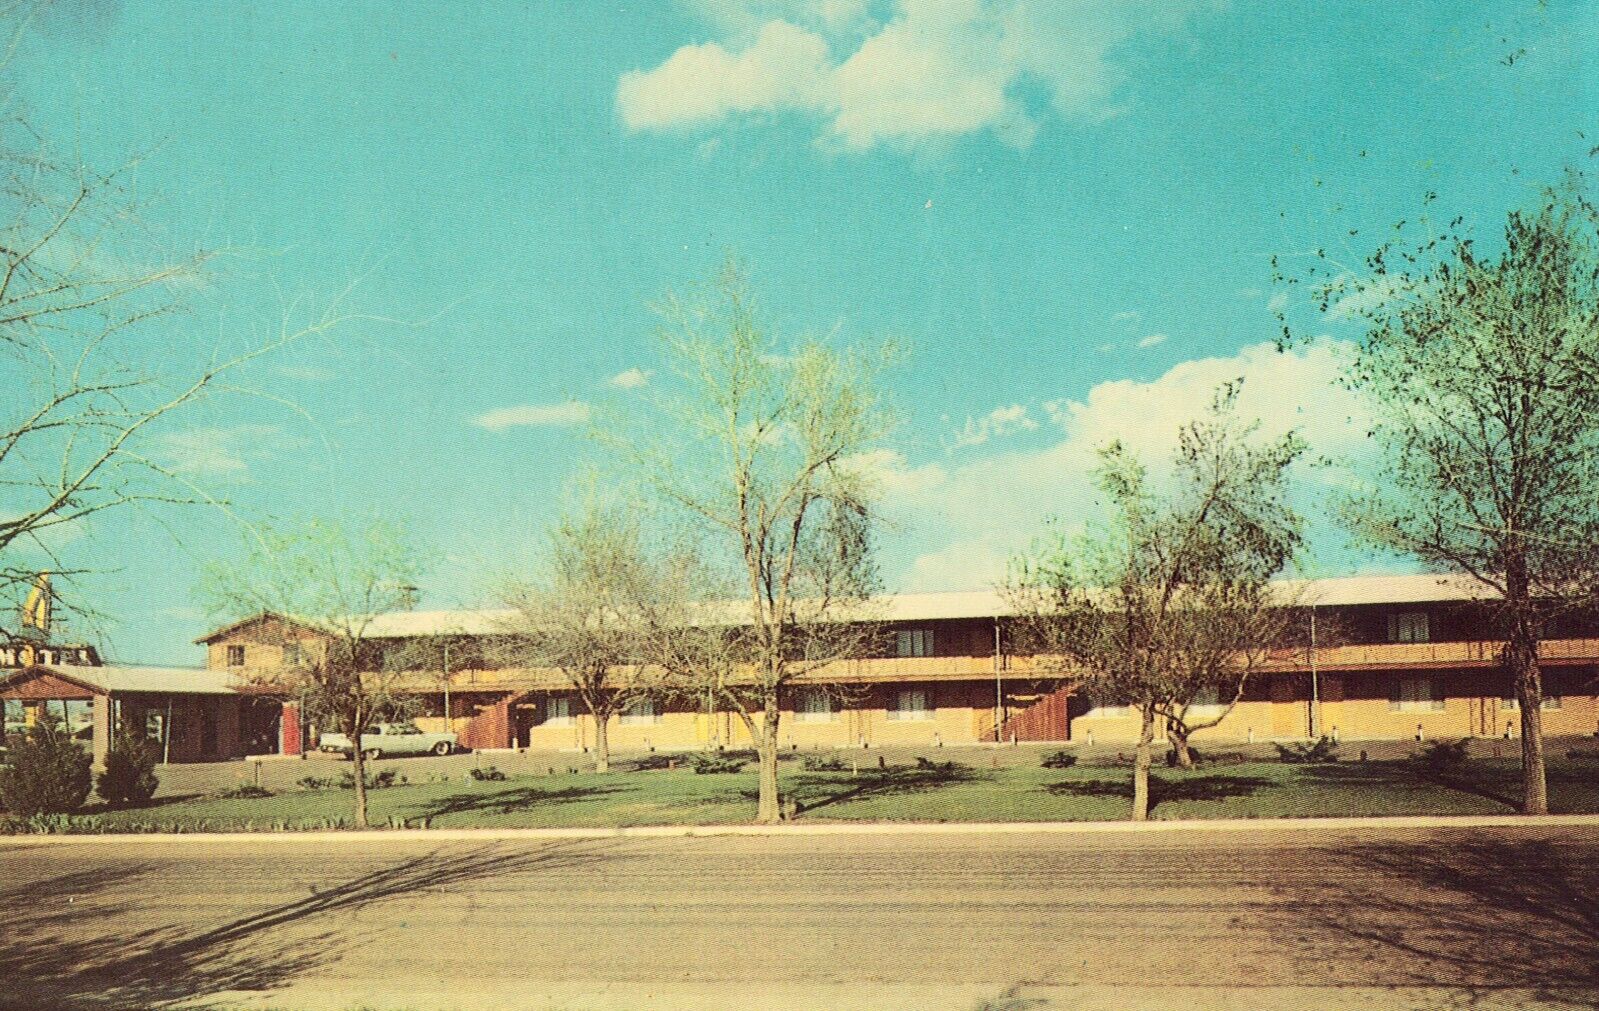 Cameron Motel - Denver, Colorado - Vintage Postcard